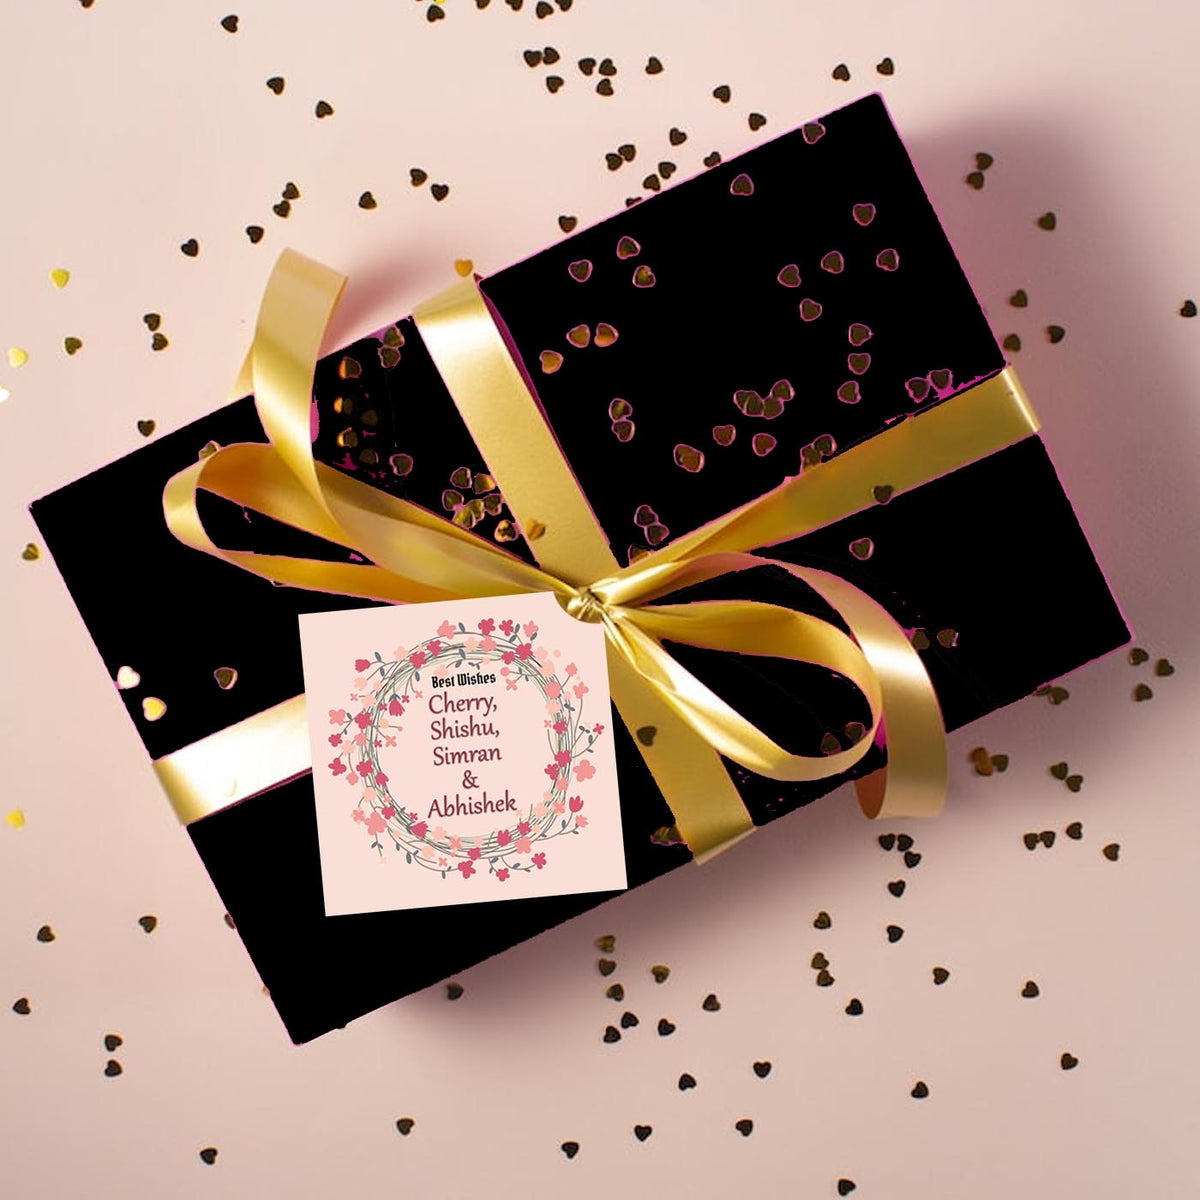 Gift Box PNG - Christmas Gift Box, Birthday Gift Box, Cartoon Gift Box,  Gold Gift Box, Pink Gift Box, Blue Gift Box, Gift Box Border, Gift Box  Ideas, Fancy Gift Box, Gift